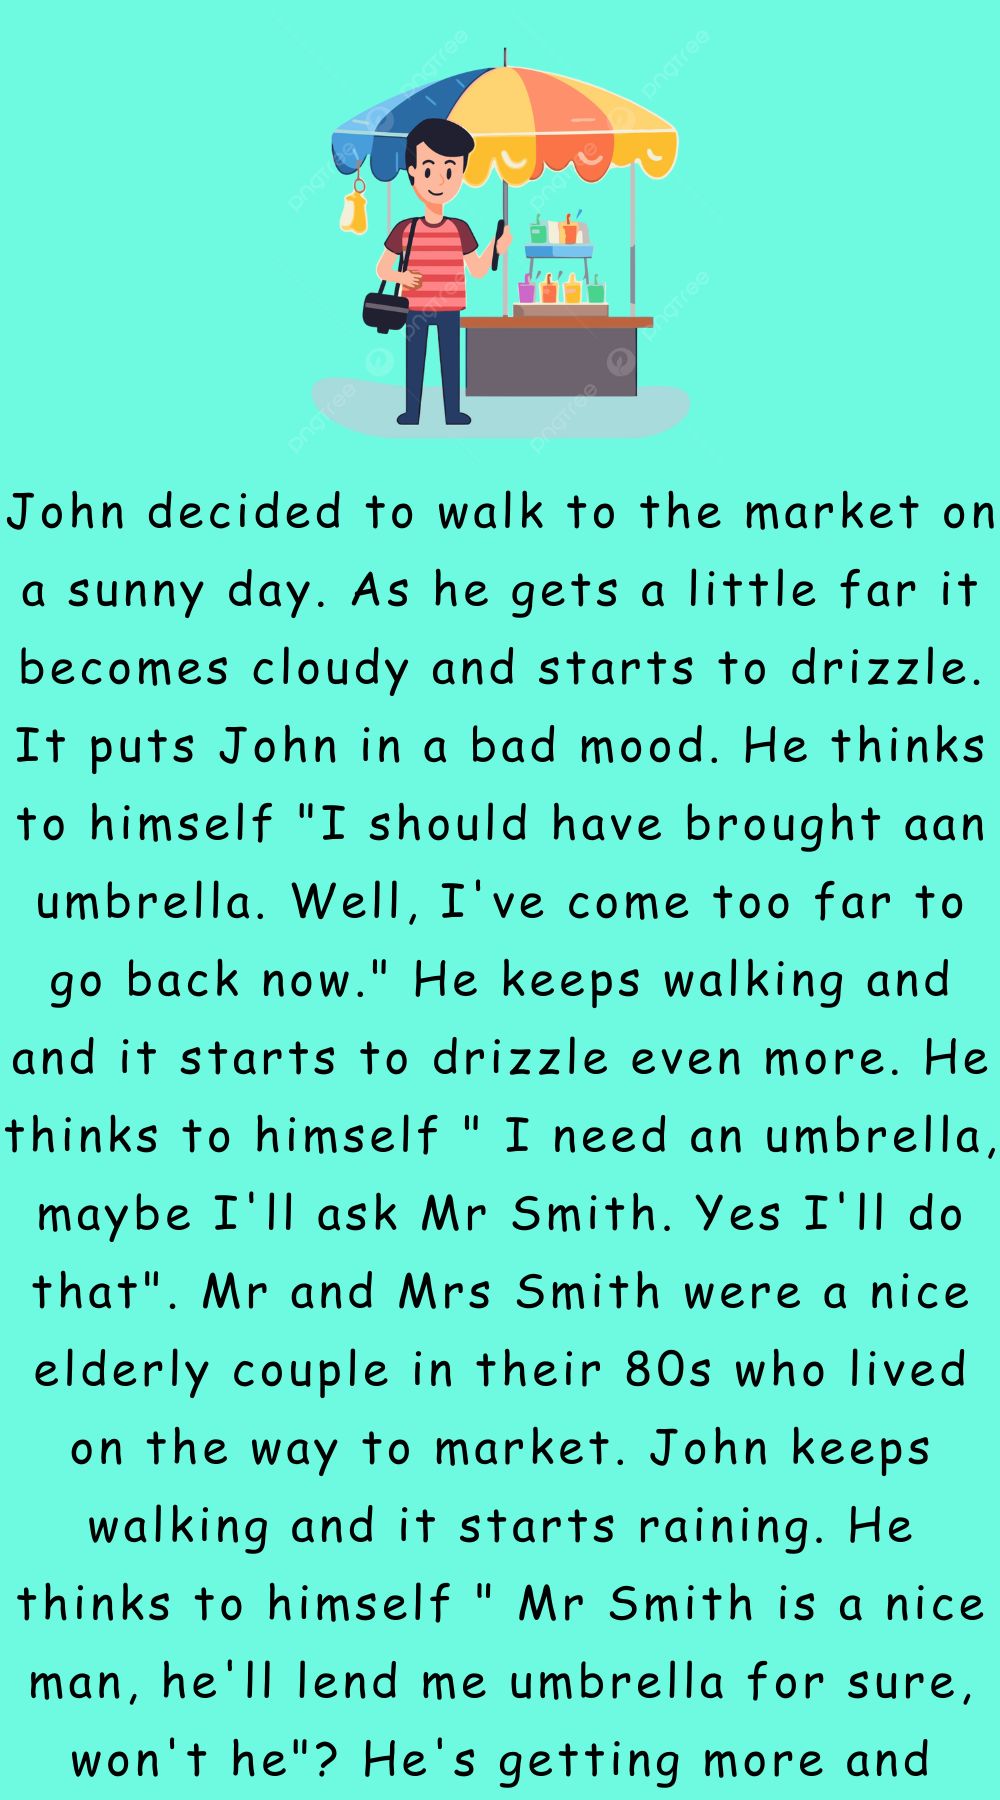 John keeps walking and it starts raining